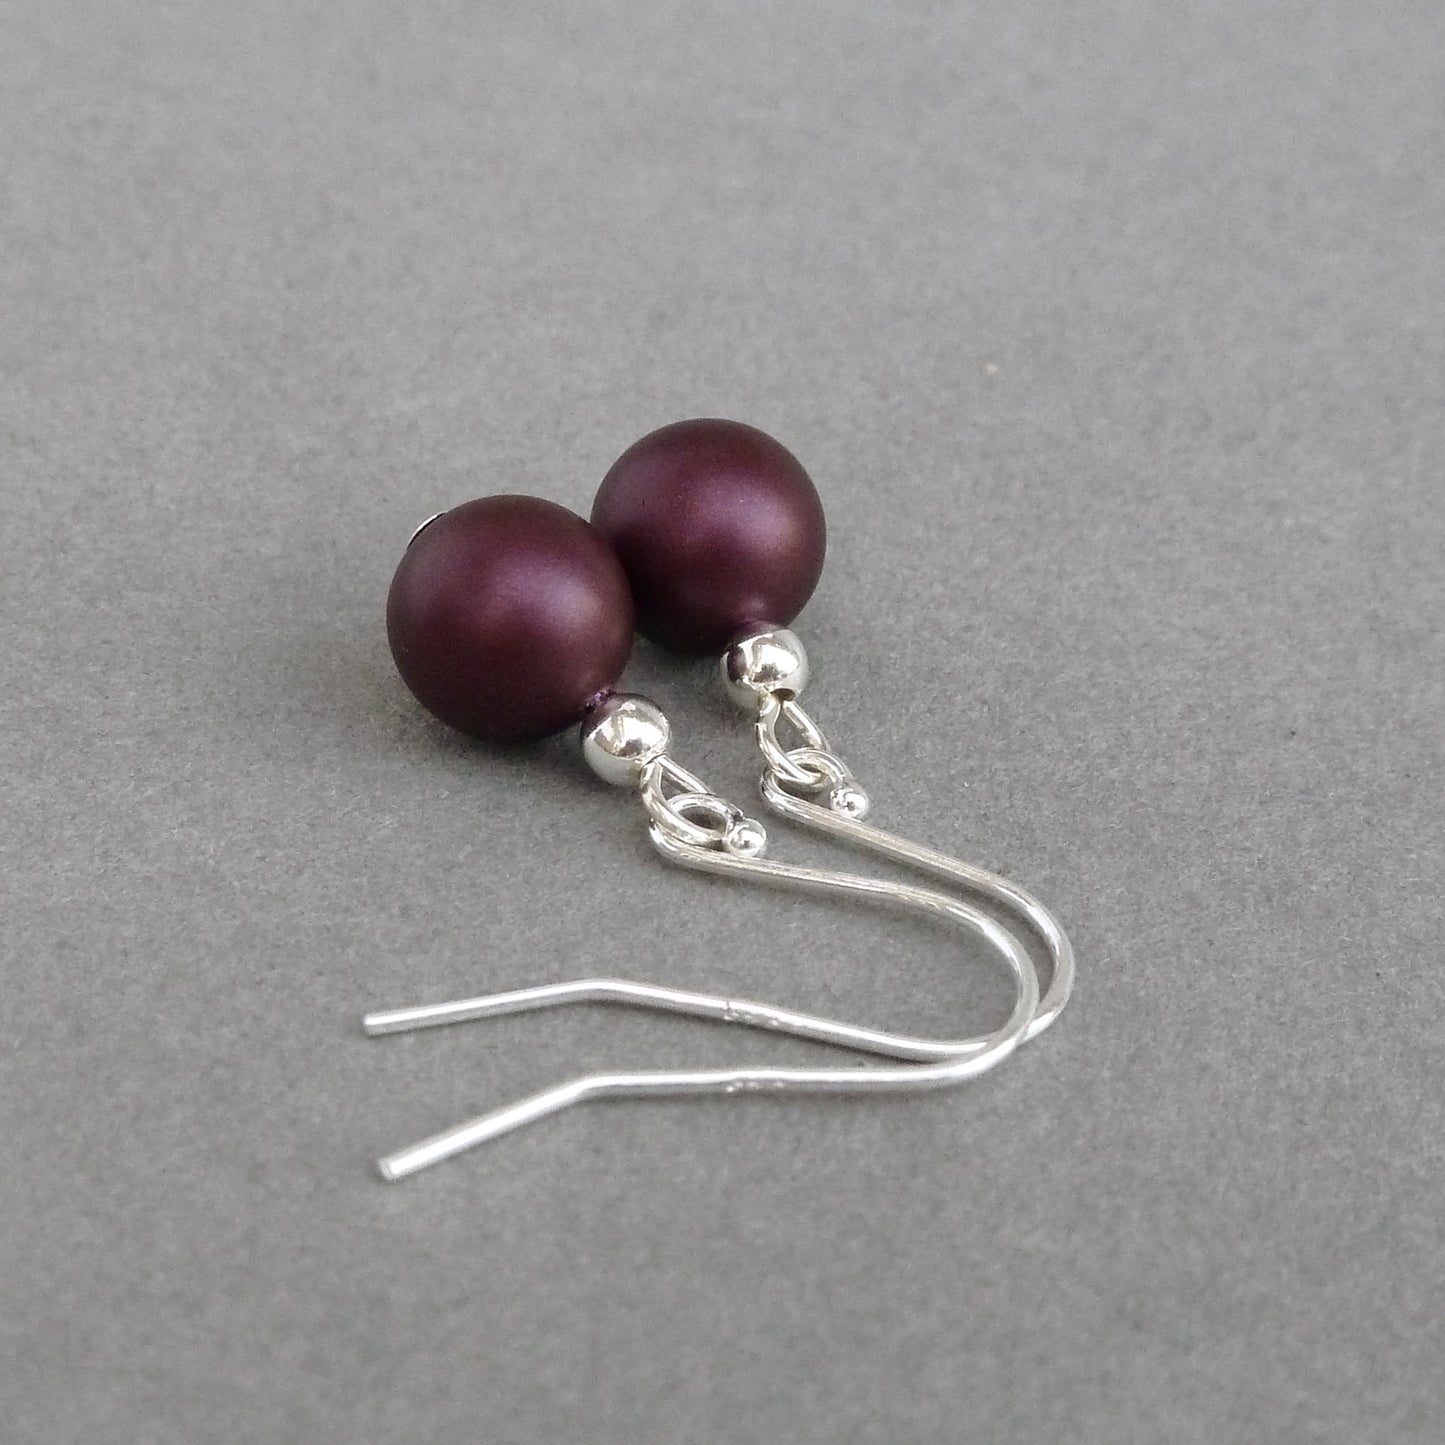 Simple Plum Drop Earrings - Everyday, Eggplant, Sterling Silver Dangle Earrings